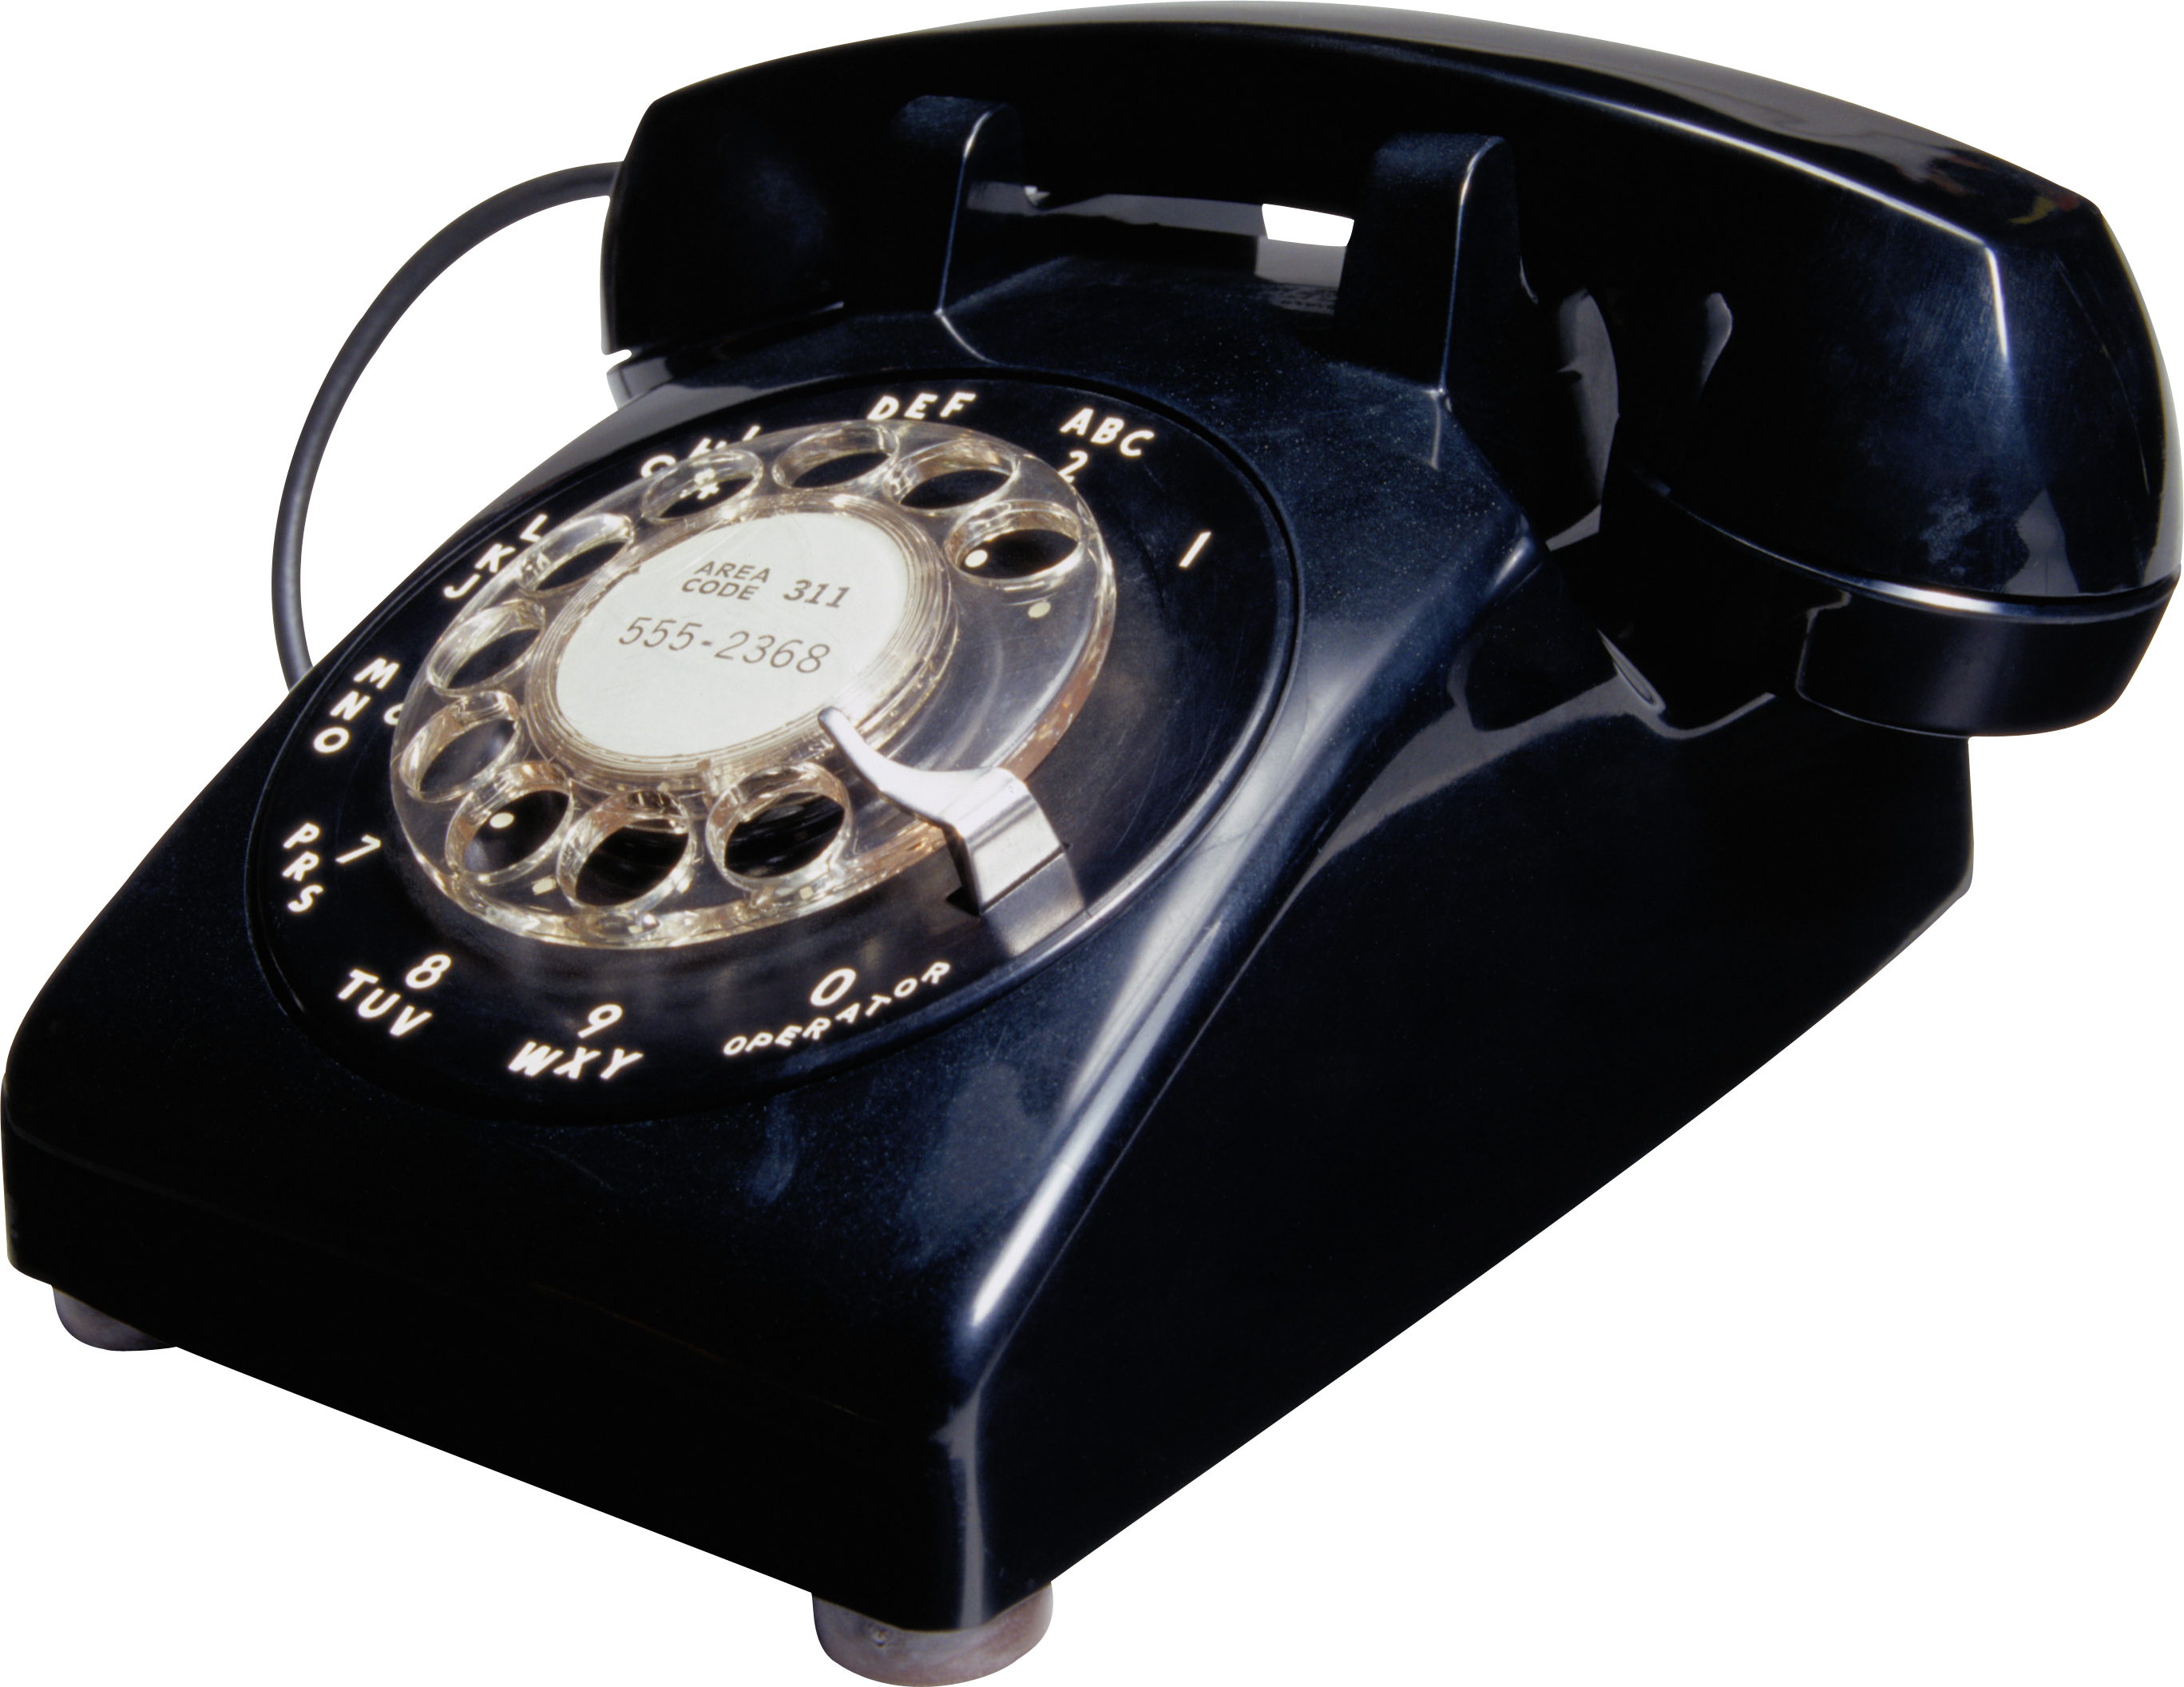 Điện thoại cố định cũ